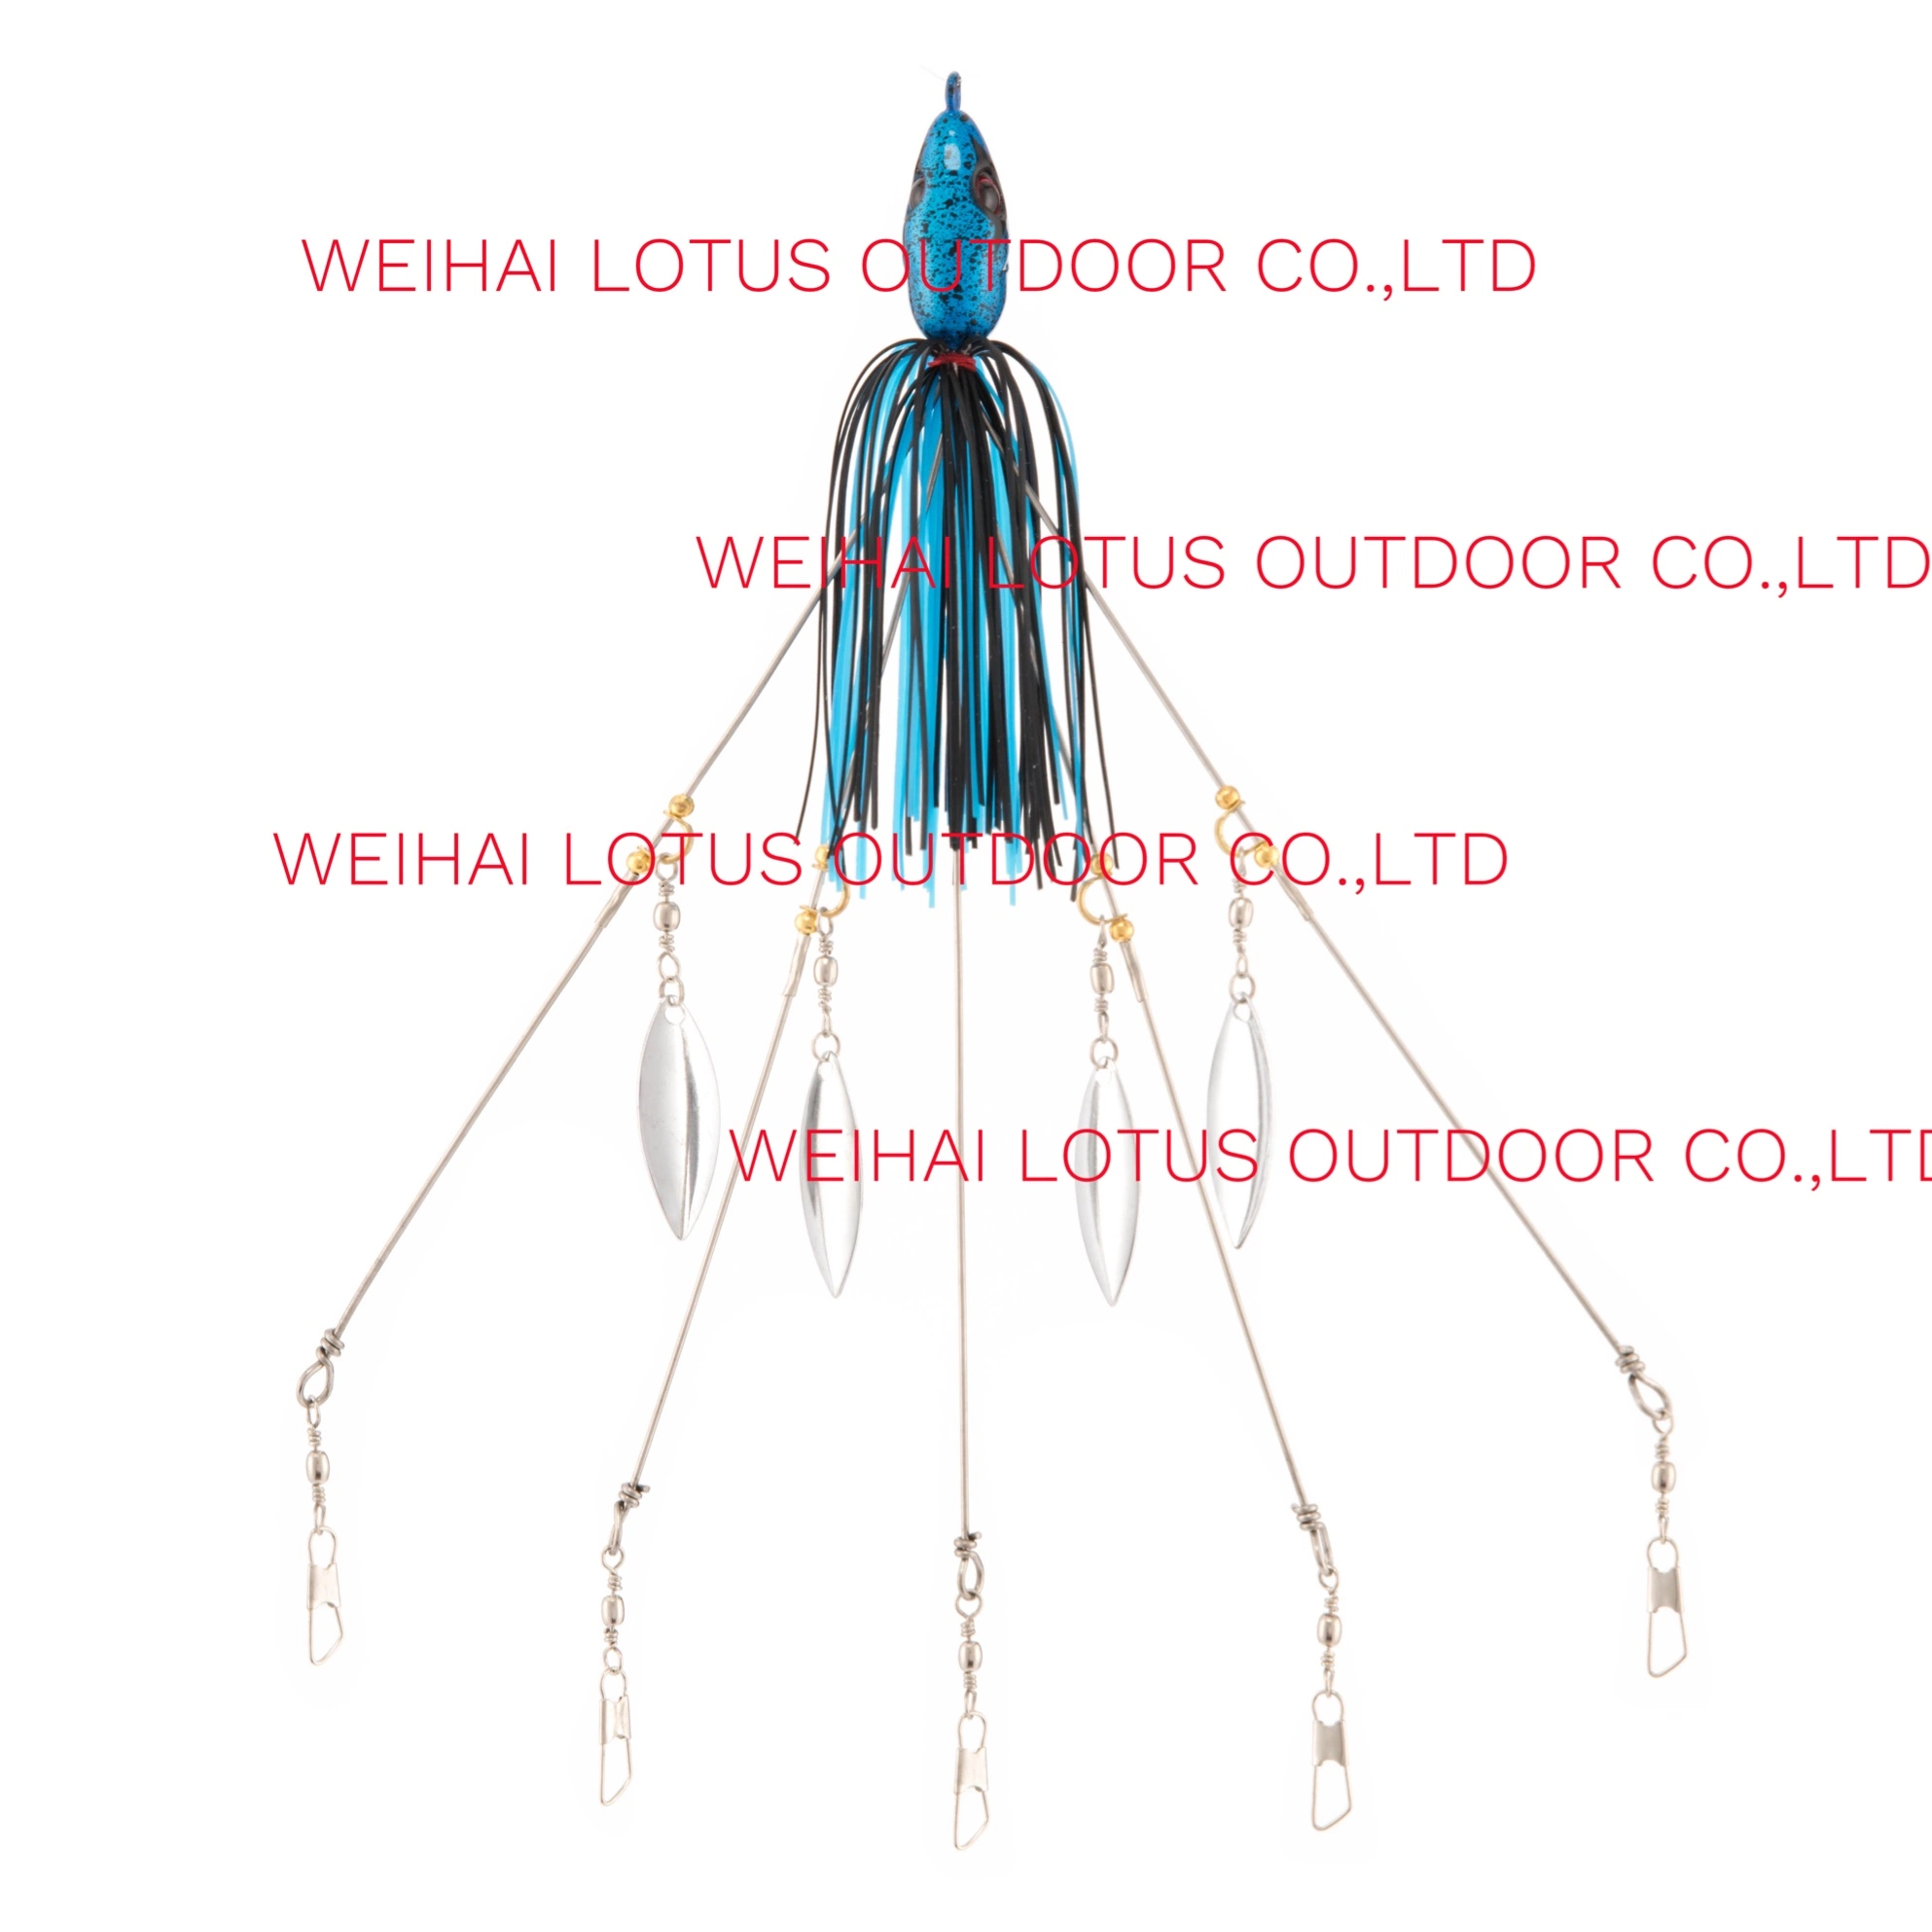 5 Arms Alabama Guarda-chuva Pesca em plataformas Trípod ultraluz com graves Kit de isco Junior, lâmina de salgueiro ultraluz, Rig. Multi-lure